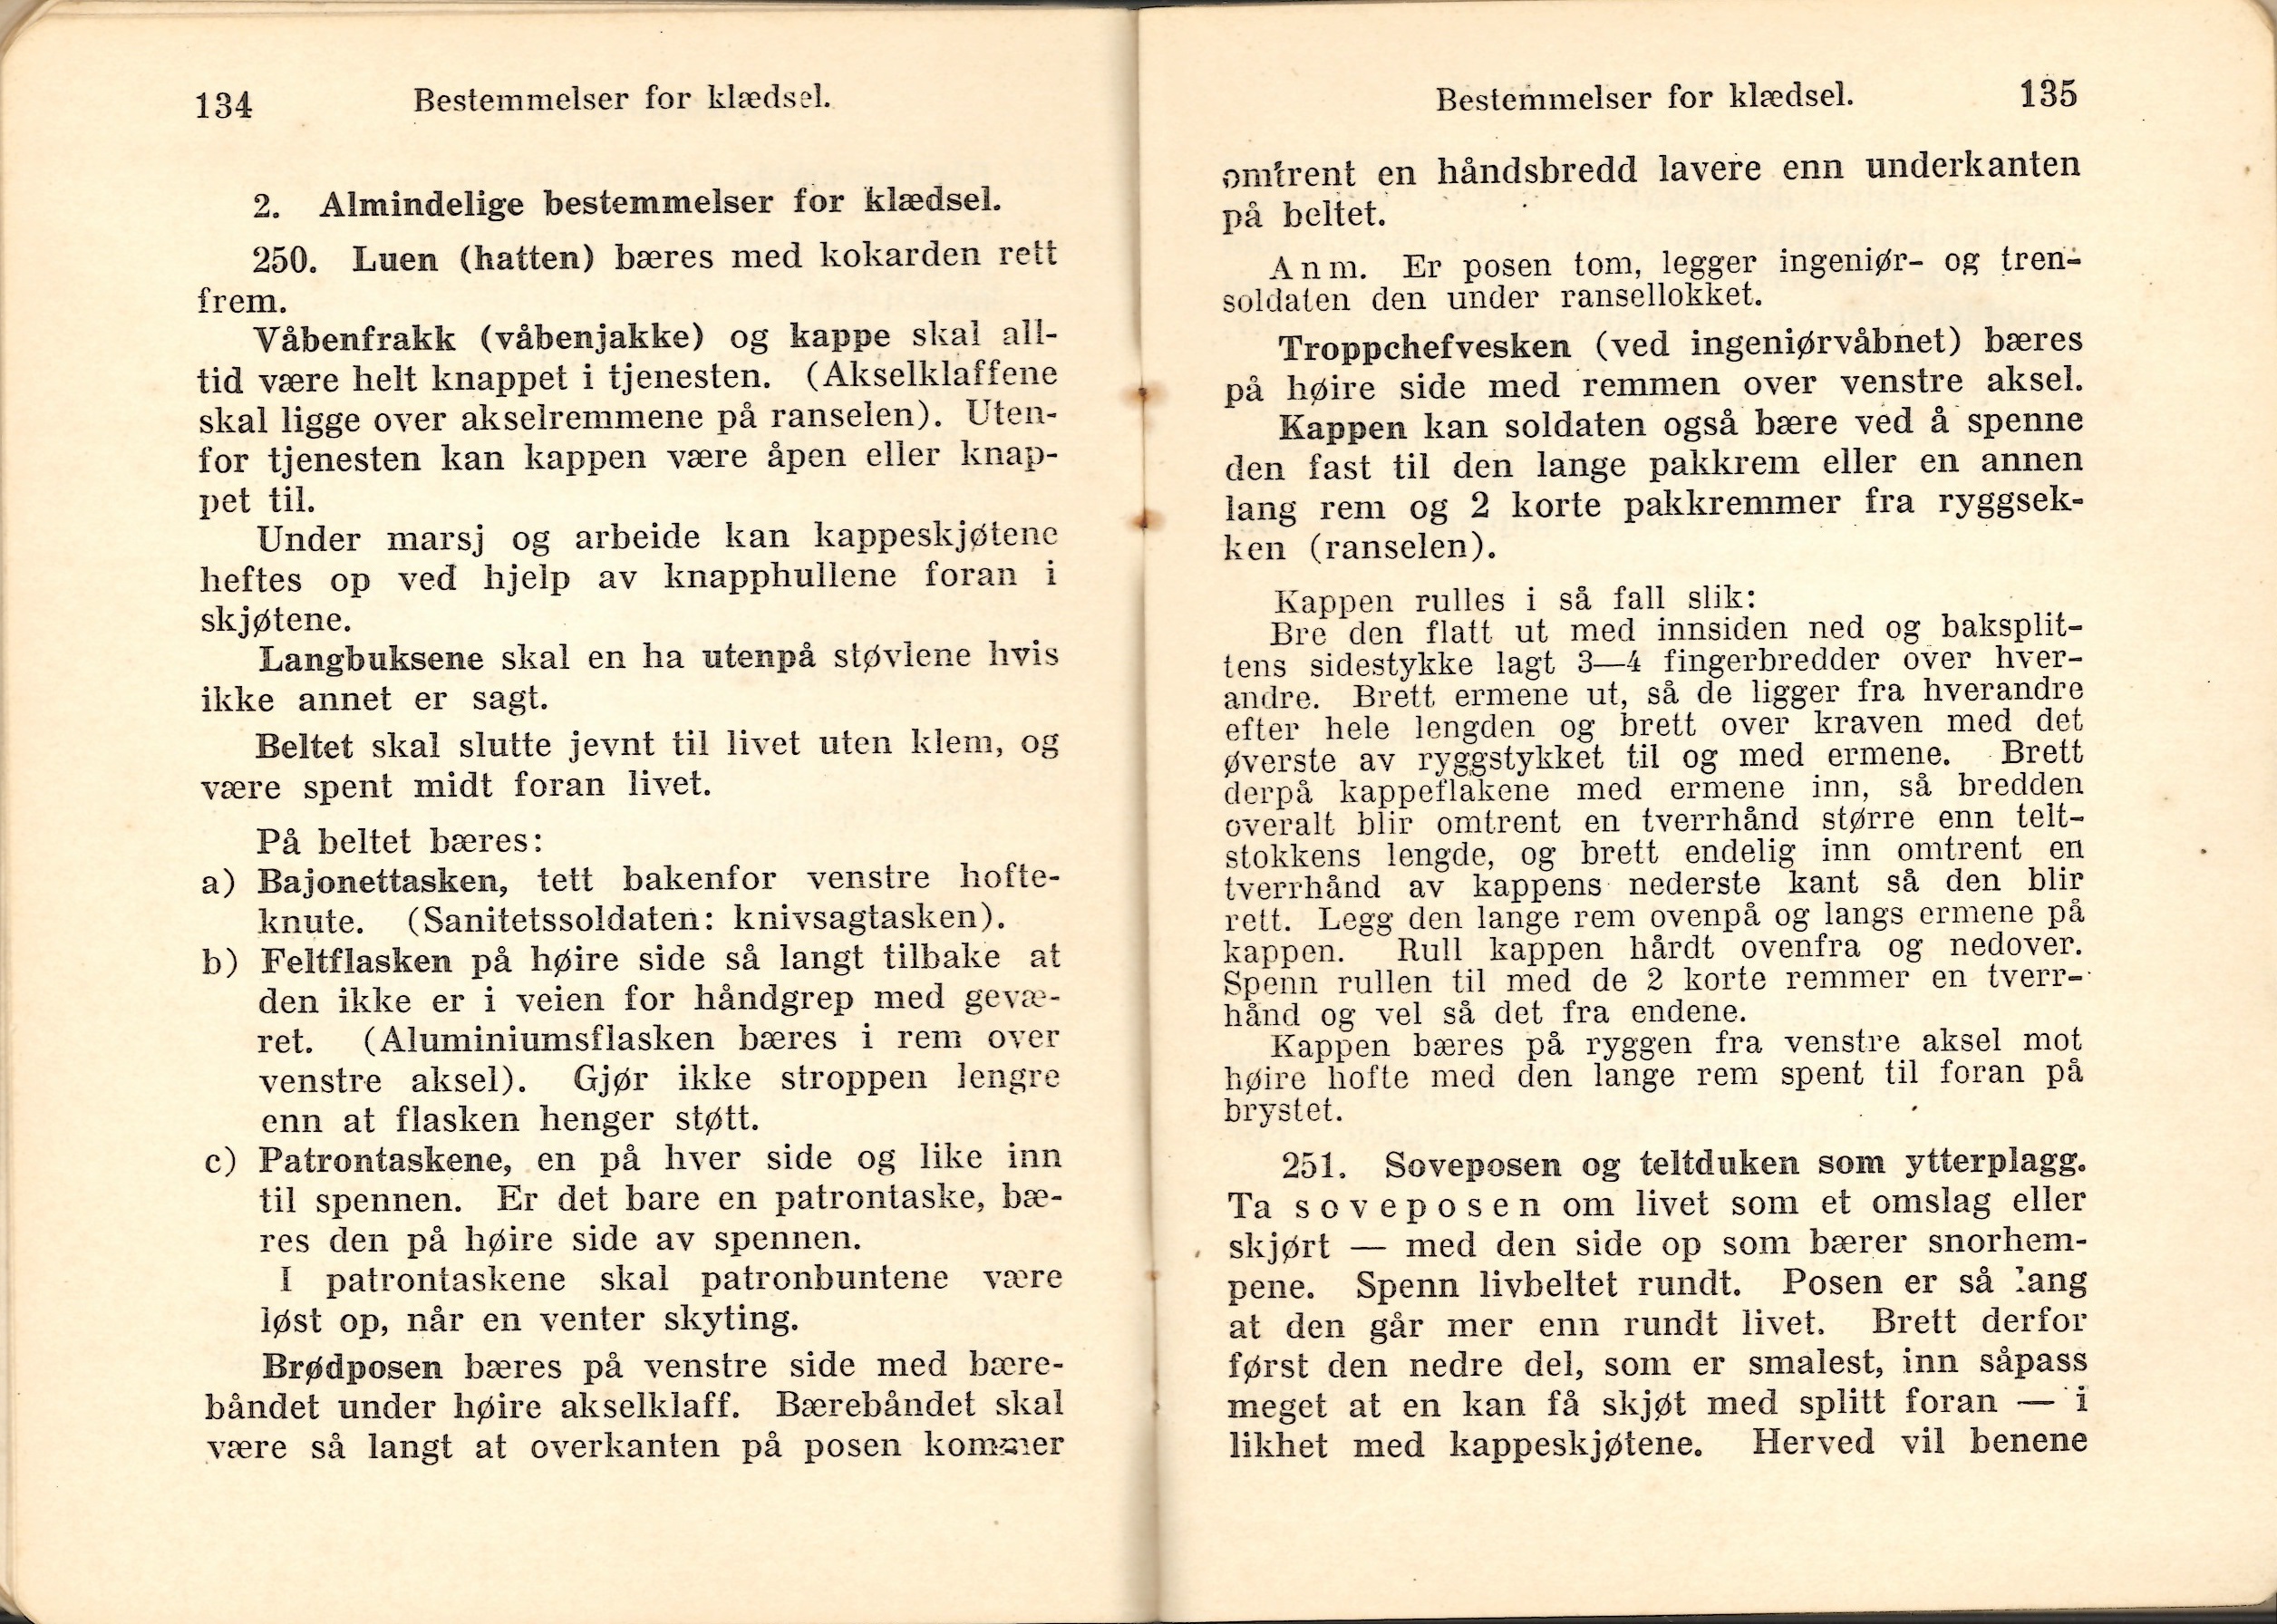 ./doc/reglement/Haandbok1925/Haandbok-for-infanteristen-1925-20.jpg